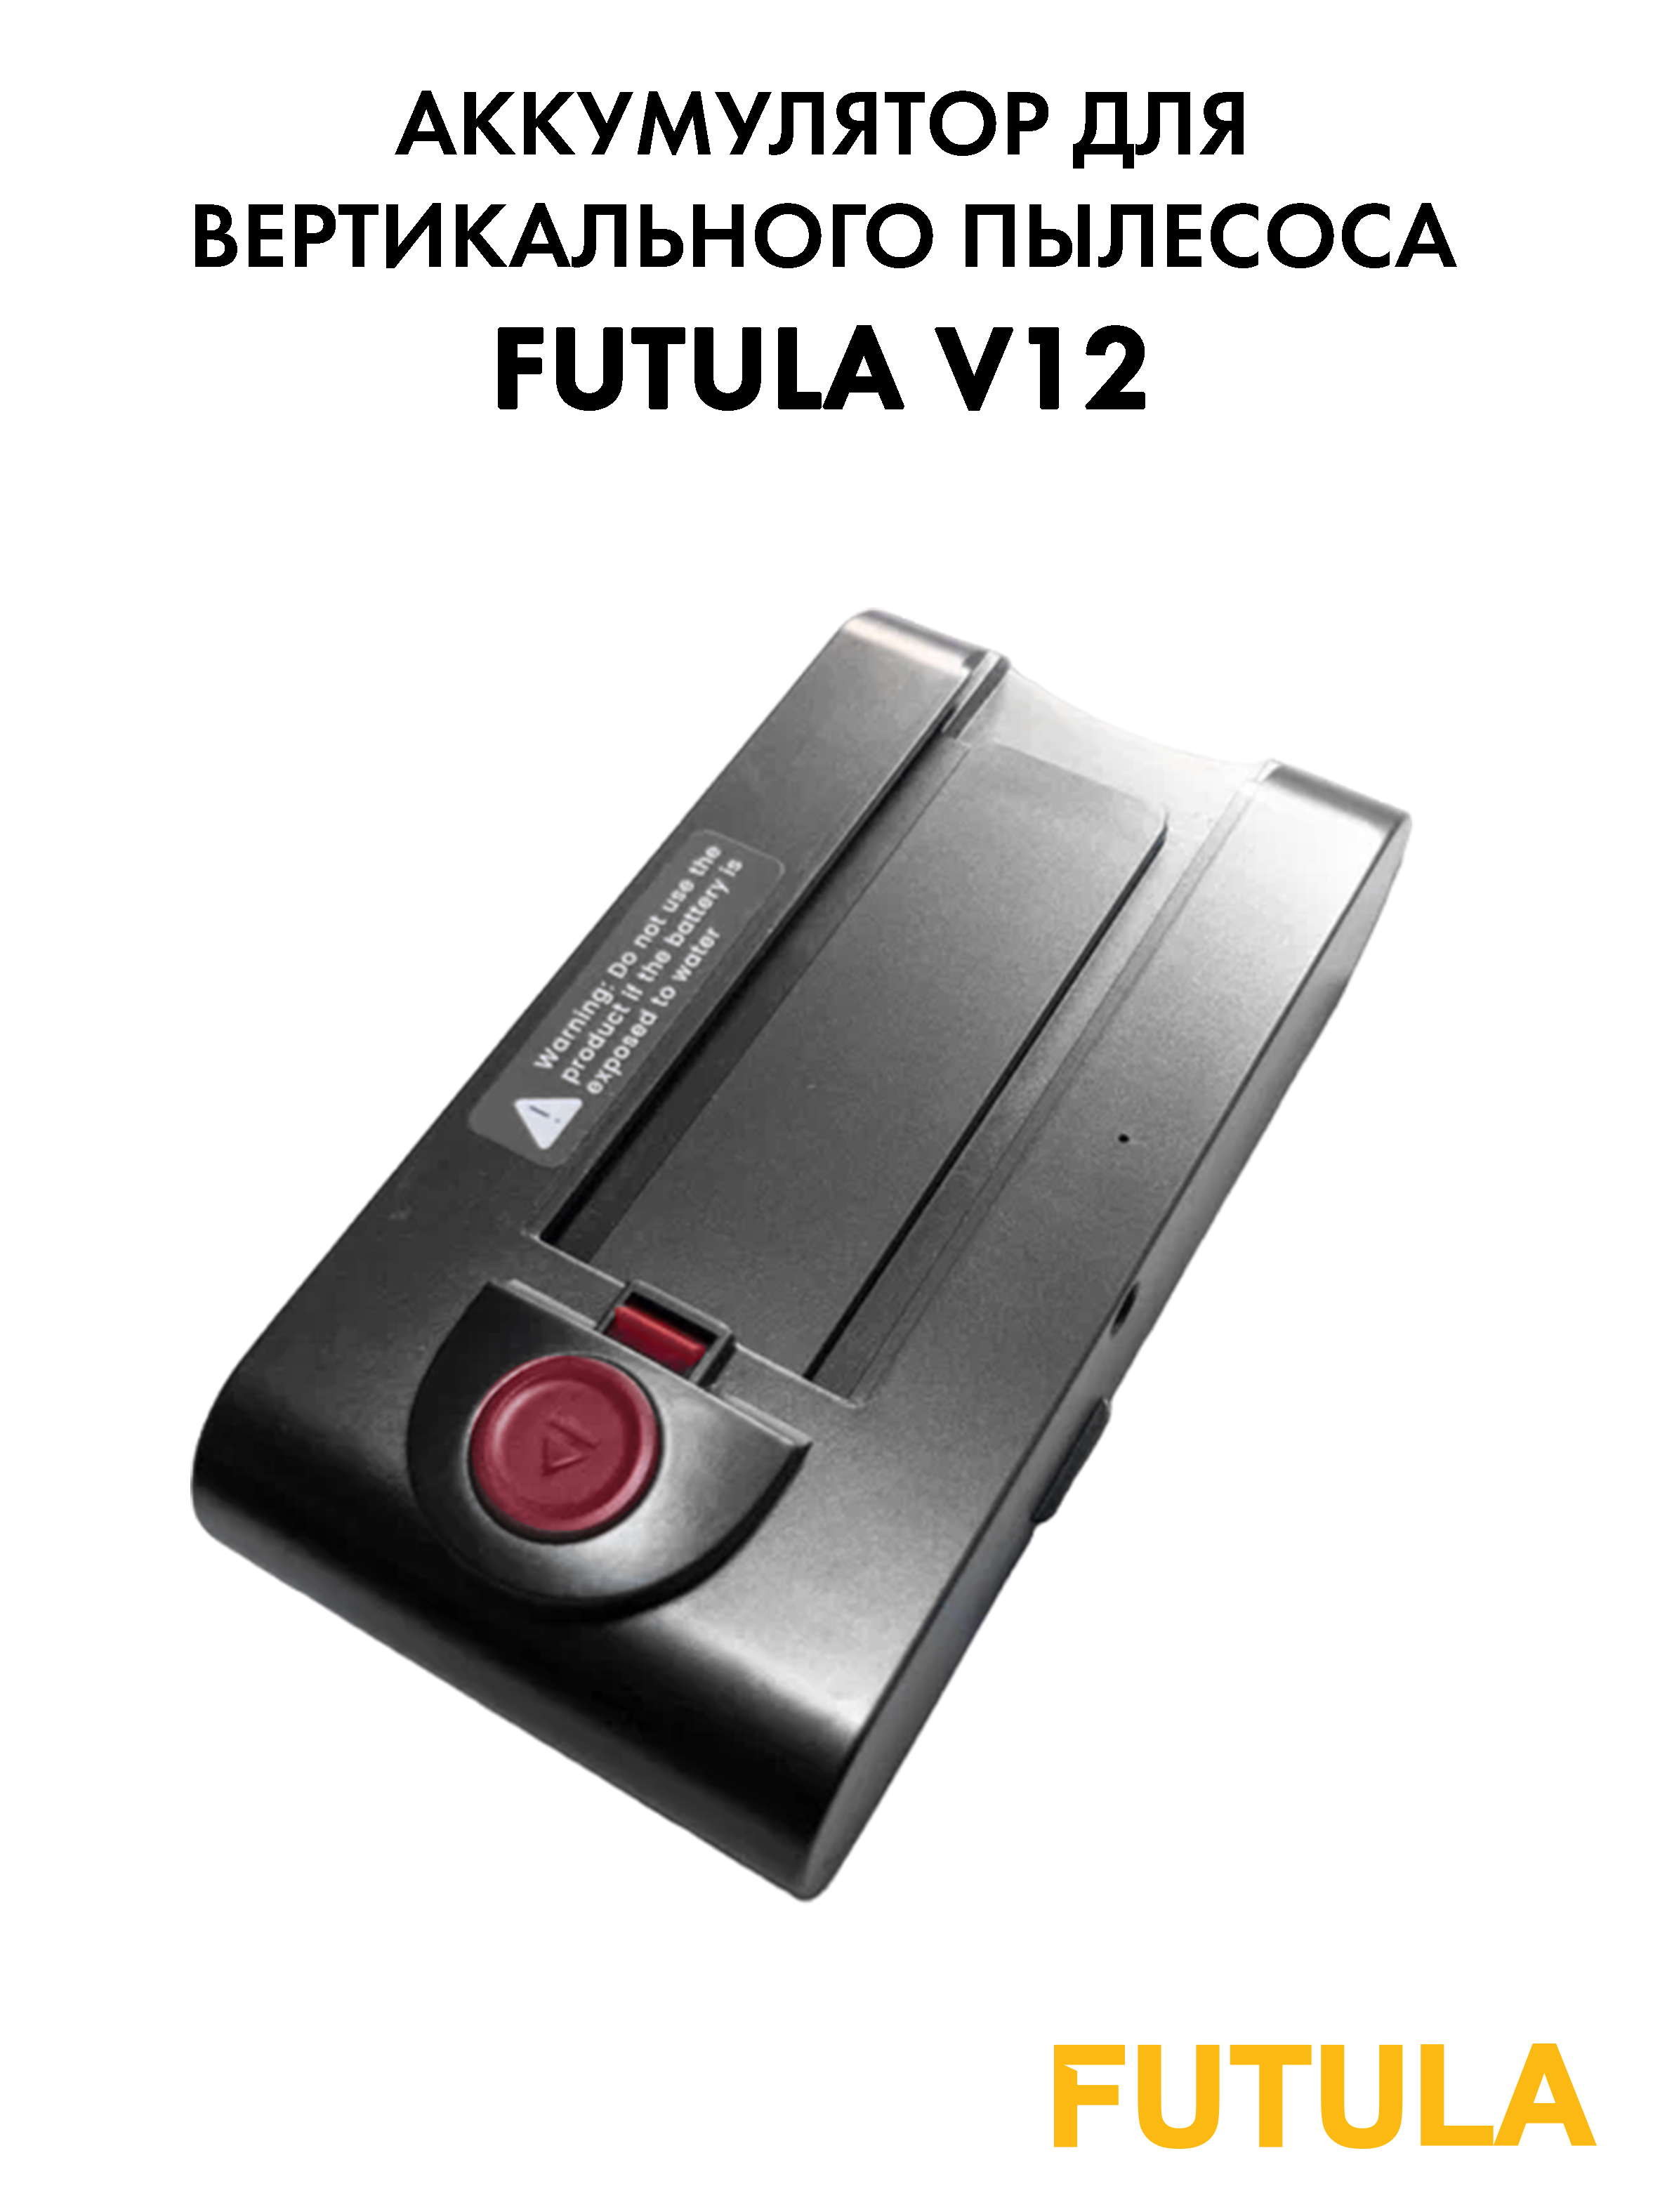 Аккумулятор для беспроводного пылесоса Futula V12 00-00214650 2000 мАч